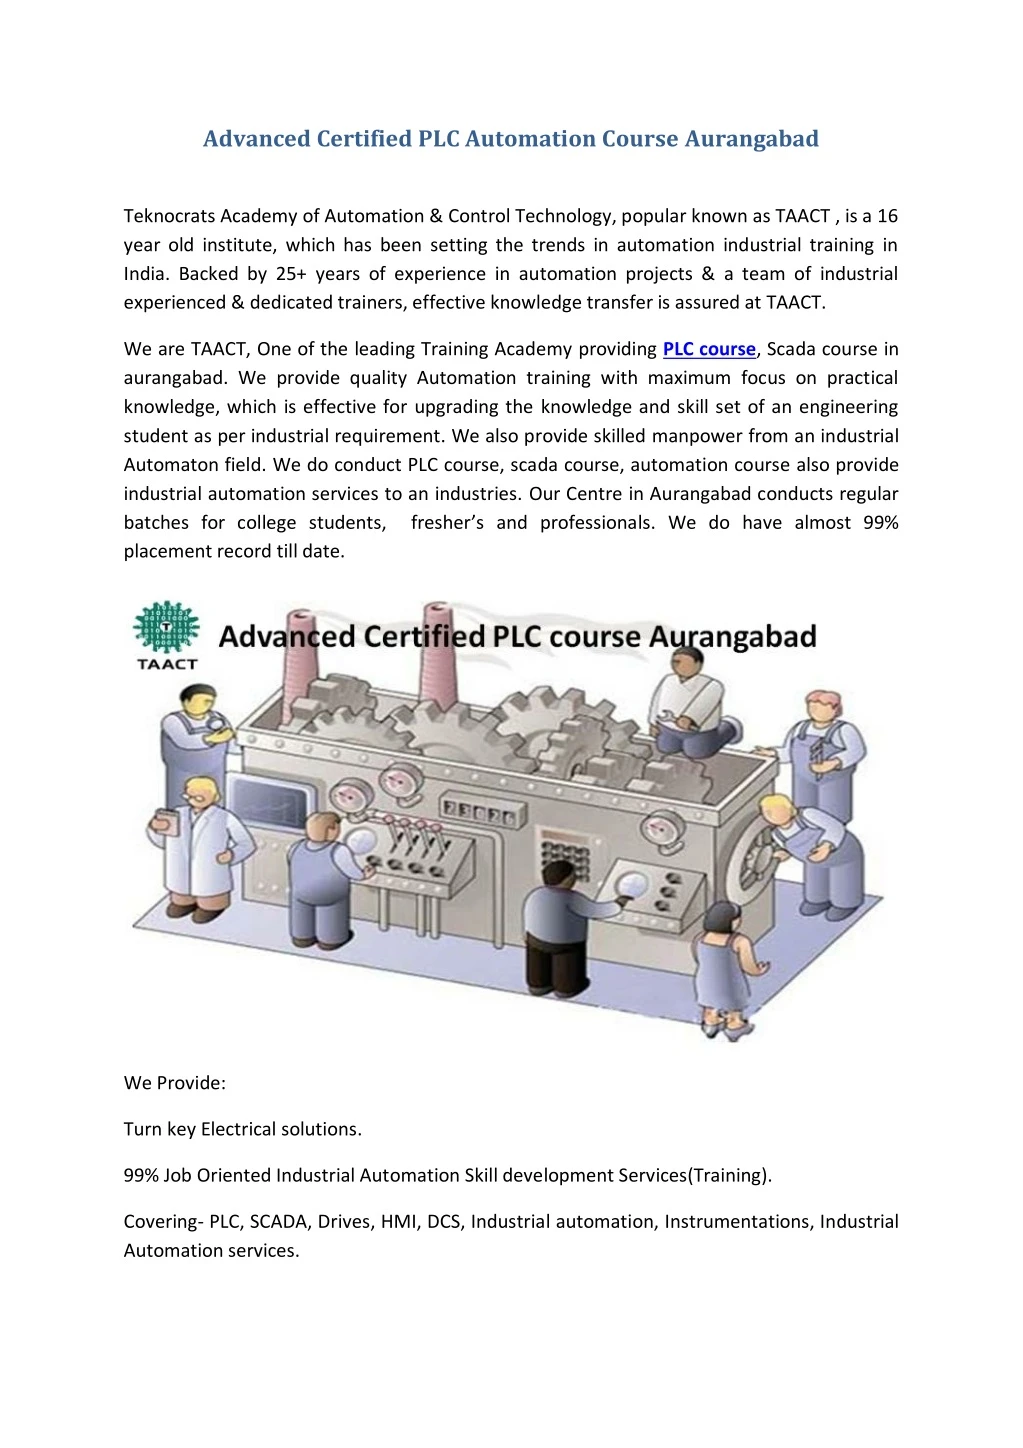 PPT Advanced Certified PLC Automation Course Aurangabad PowerPoint